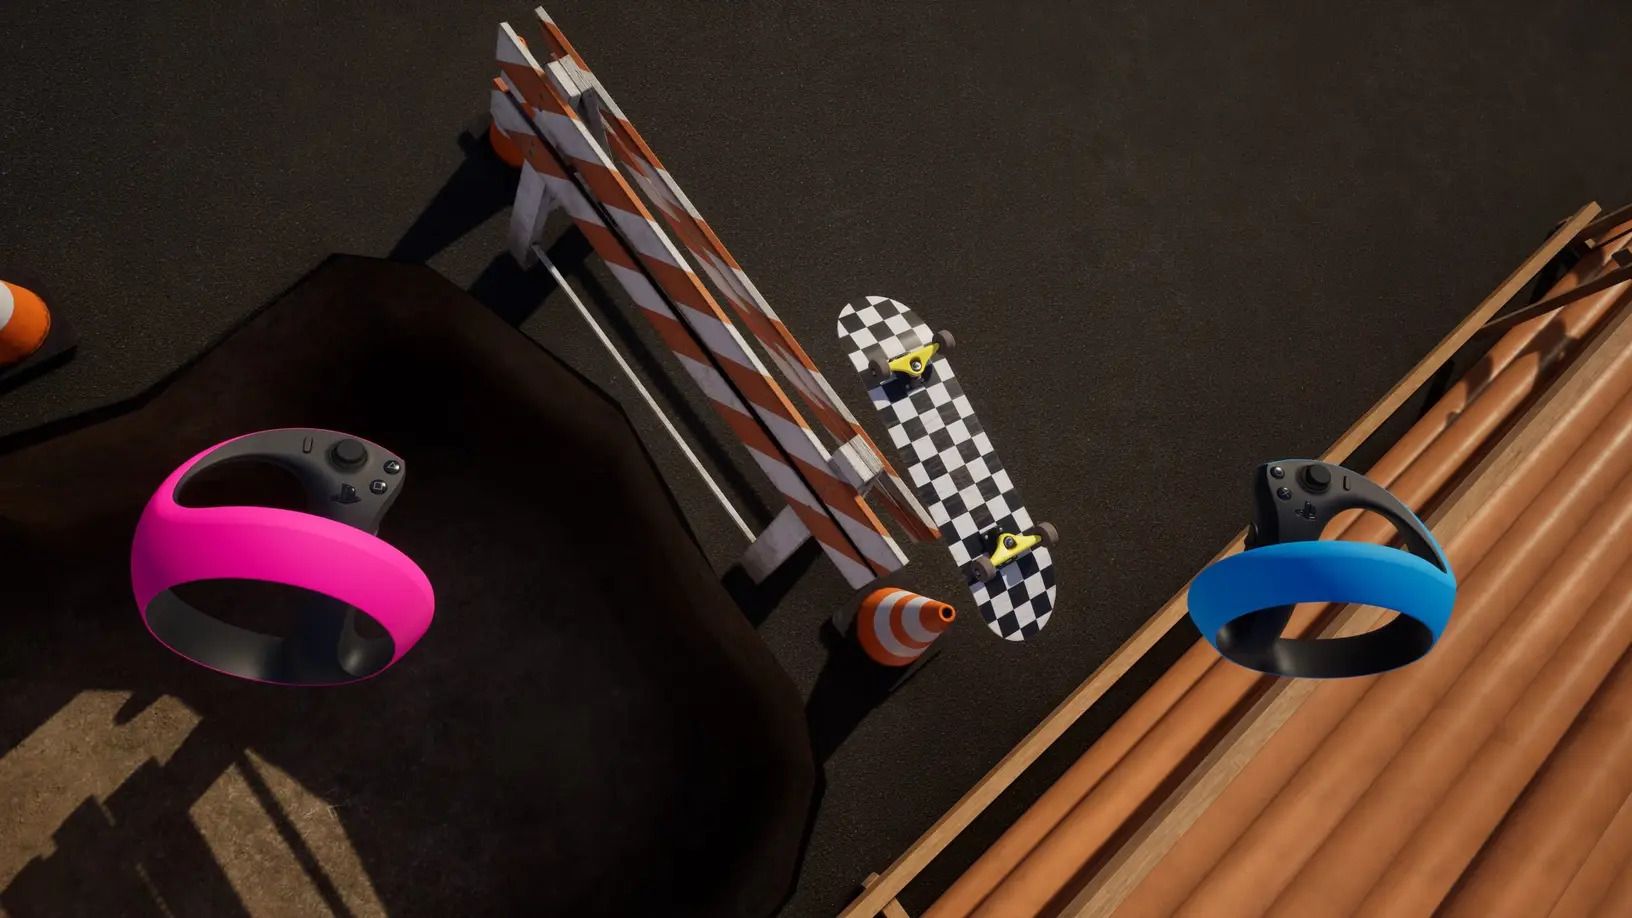 Upcoming VR games - VR Skater